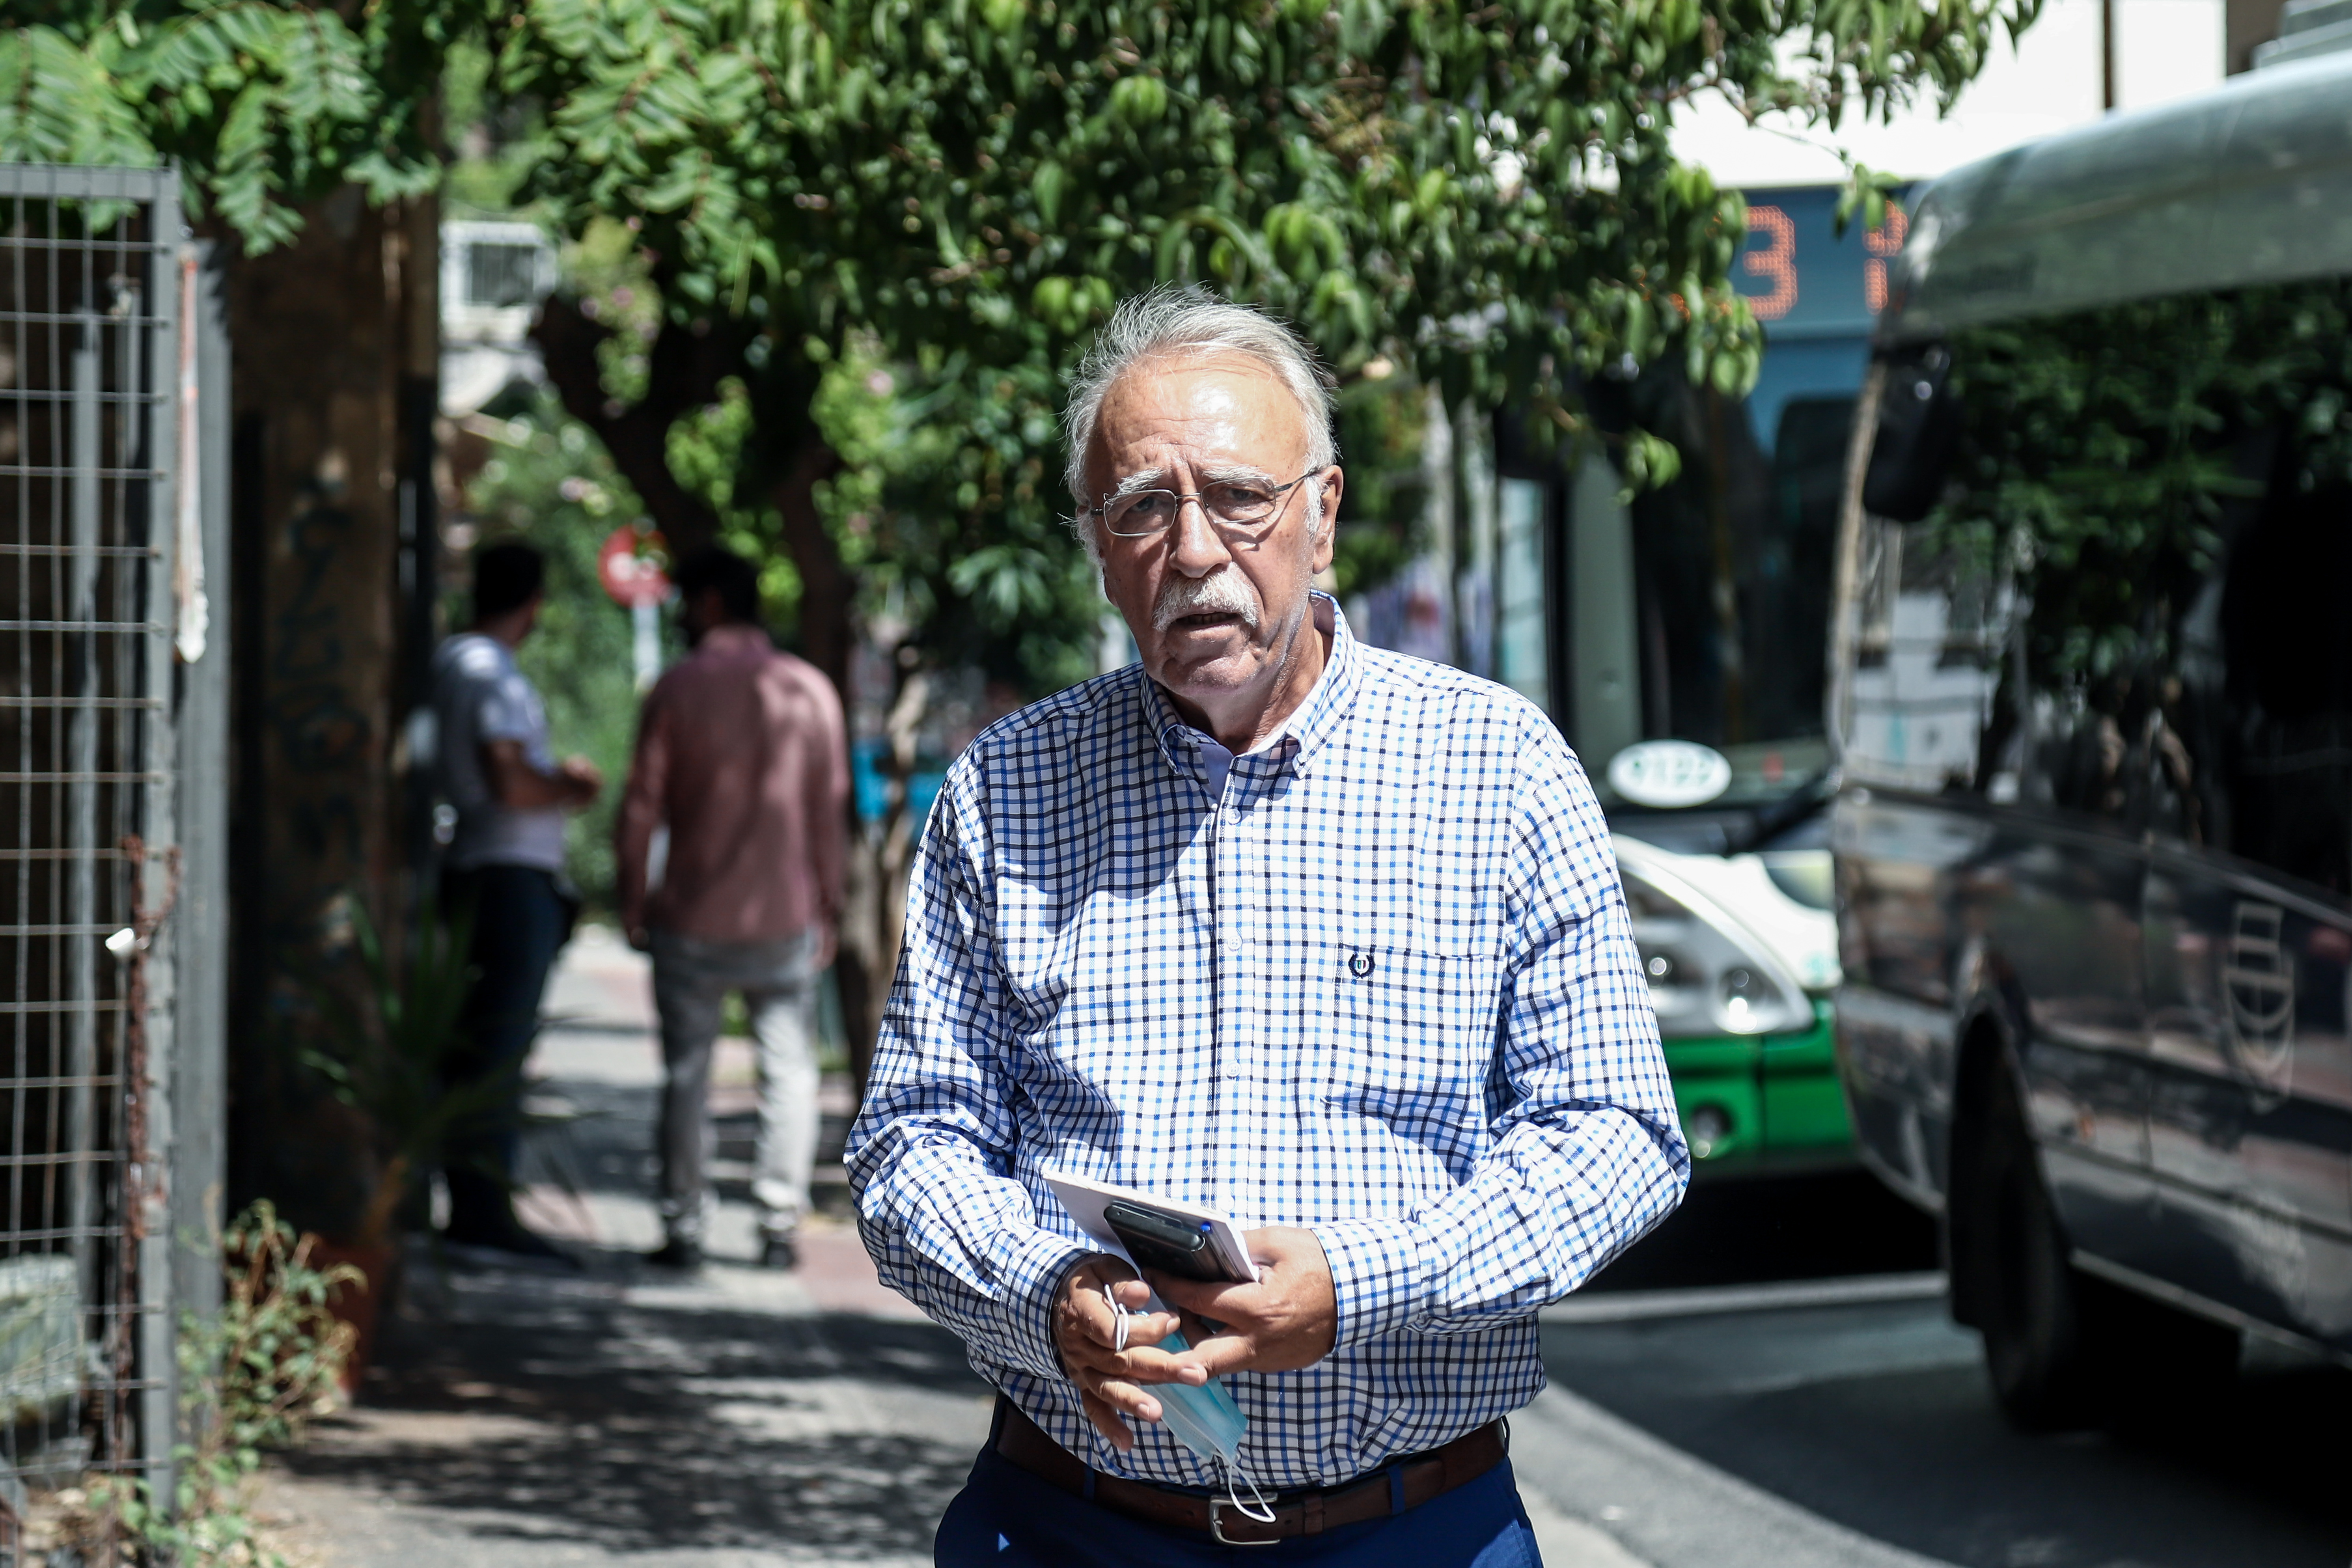 Βίτσας για την ήττα του ΣΥΡΙΖΑ: «Χάσαμε γιατί δεν μετρήσαμε σωστά την επίδραση του εγκλεισμού λόγω Covid στην κοινωνία»